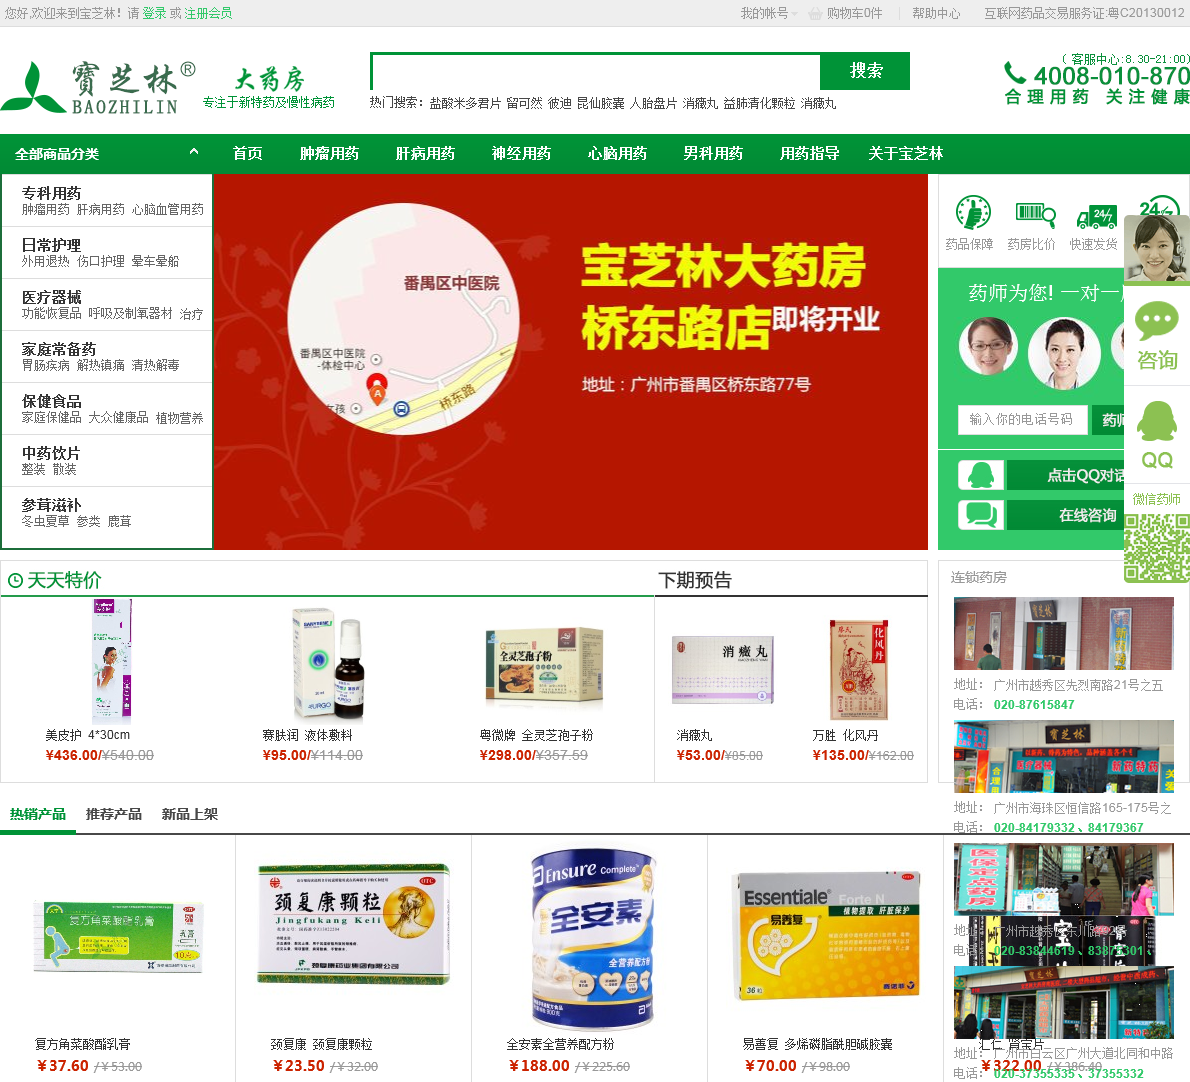 广州大药房网上药店图片